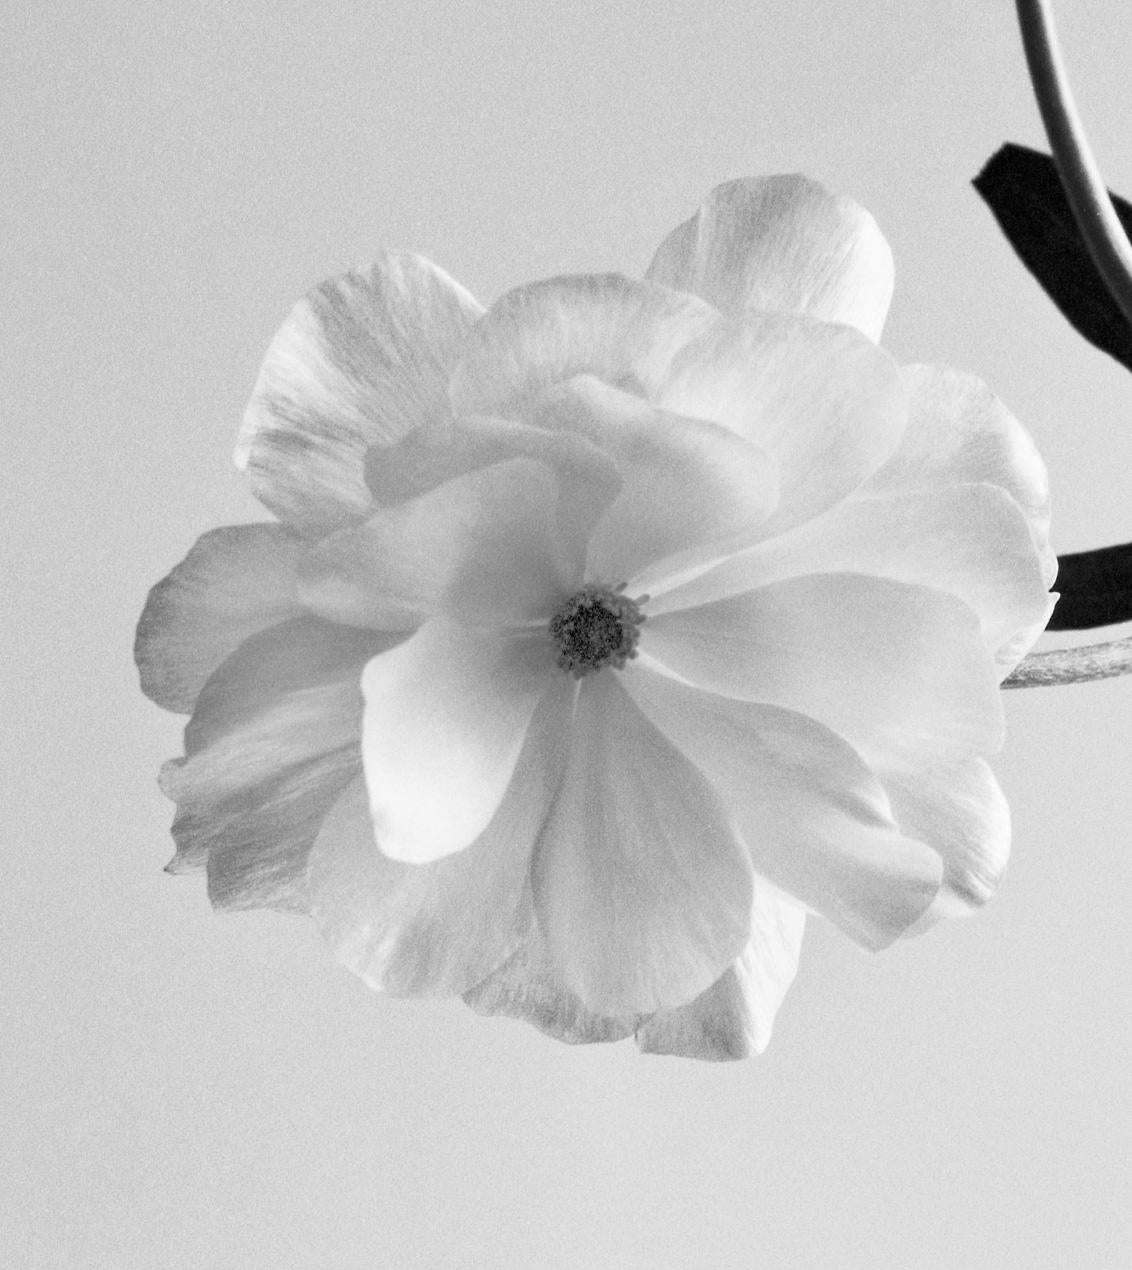 Ranunculus Schmetterling Nr.2 – analoge Schwarz-Weiß-Blumenfotografie – Photograph von Ugne Pouwell